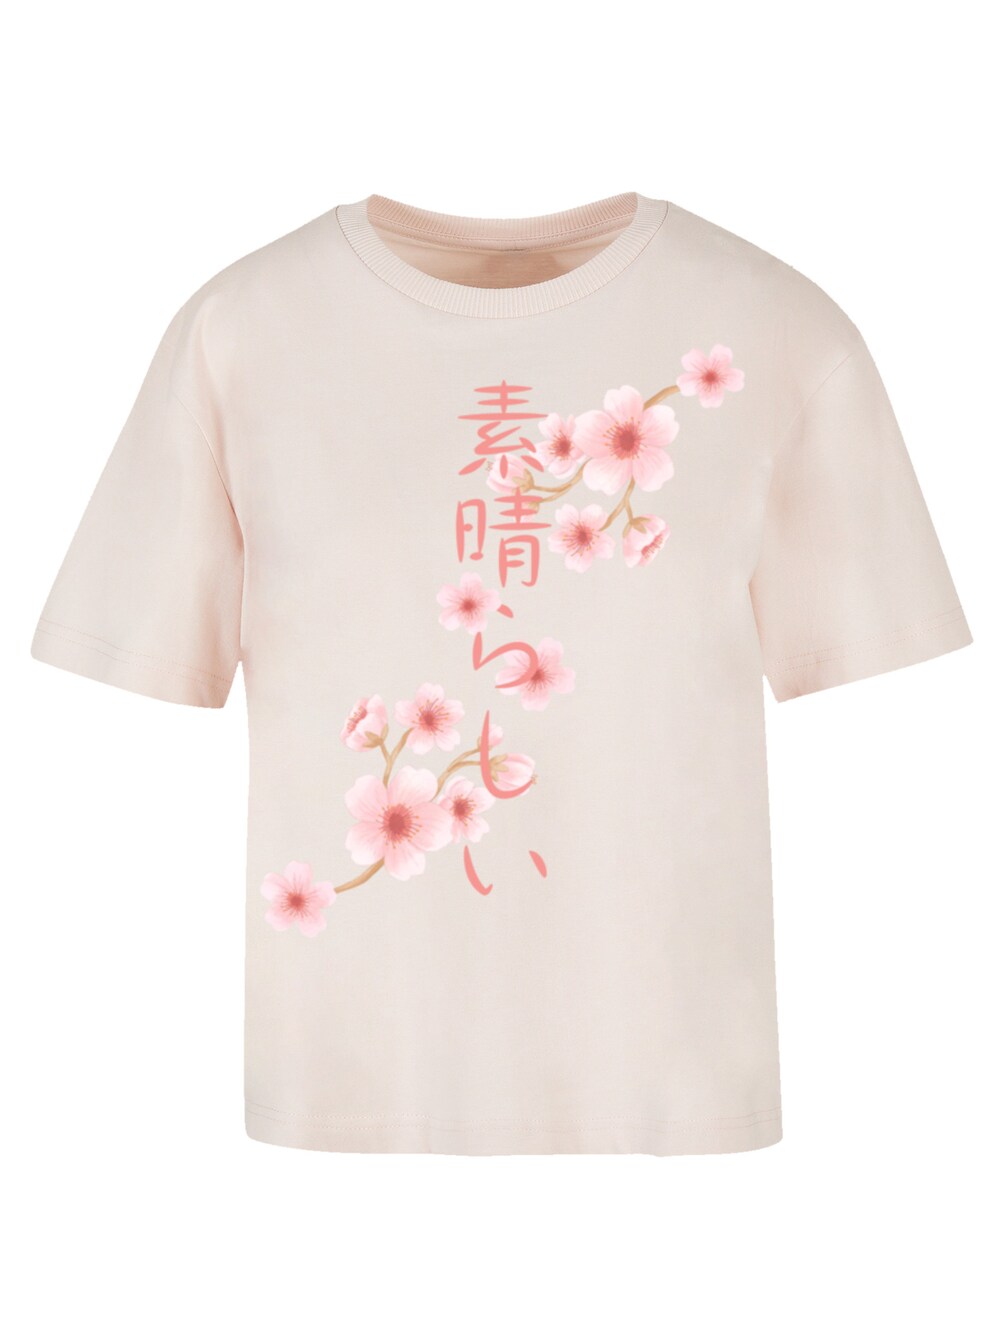 Рубашка F4Nt4Stic, розовый/пастельно-розовый